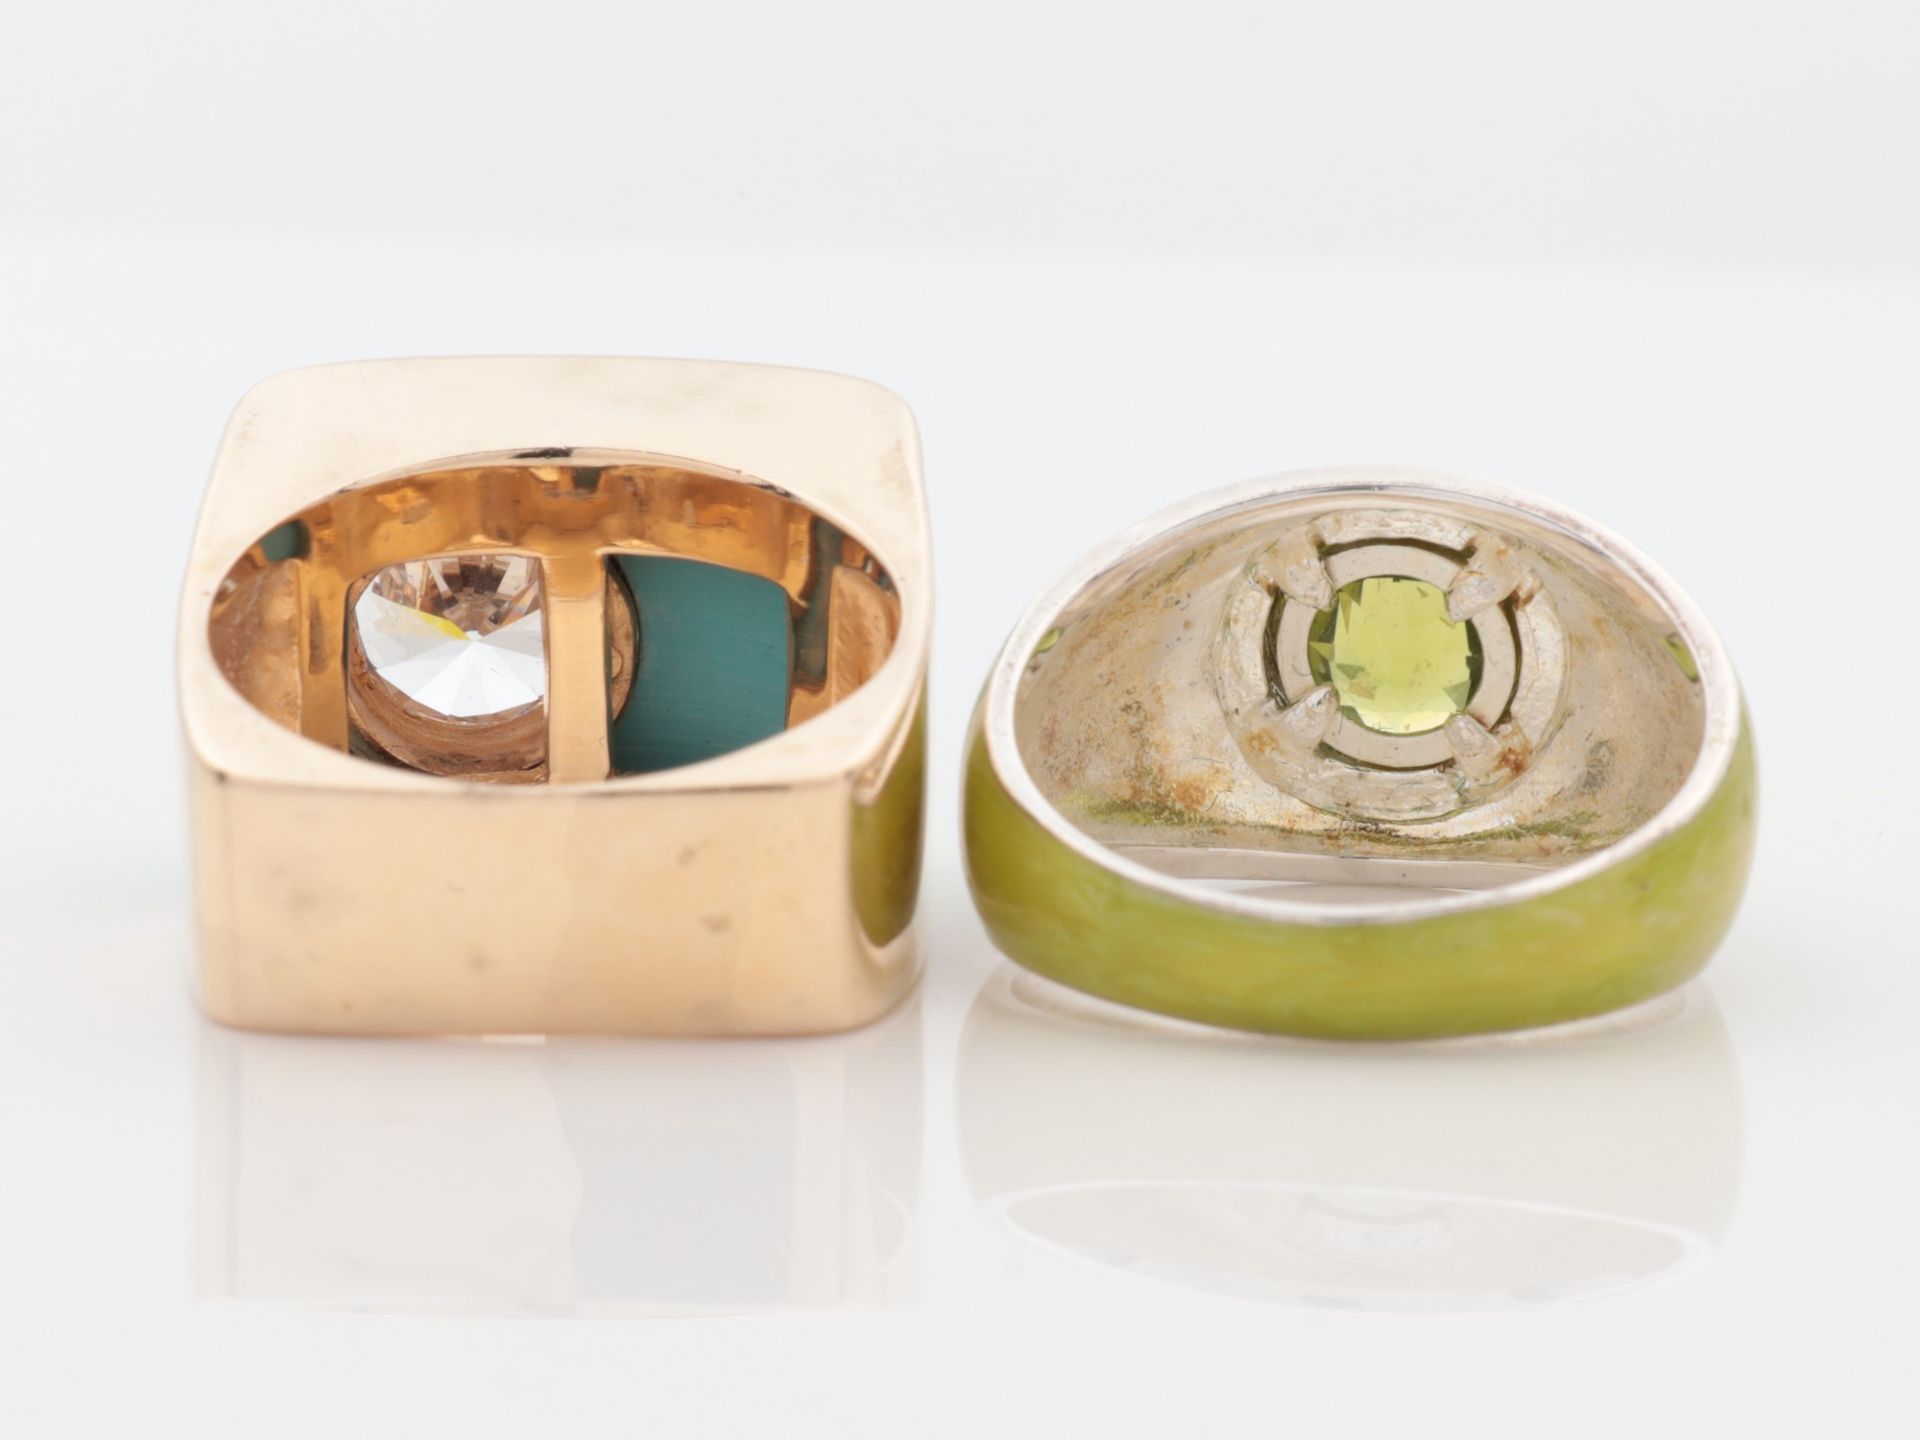 Diamant - Damenring Si 925, grün emaillierte Ringschiene, runder, vergold. Ringkopf, Kranz besetzt - Bild 4 aus 5